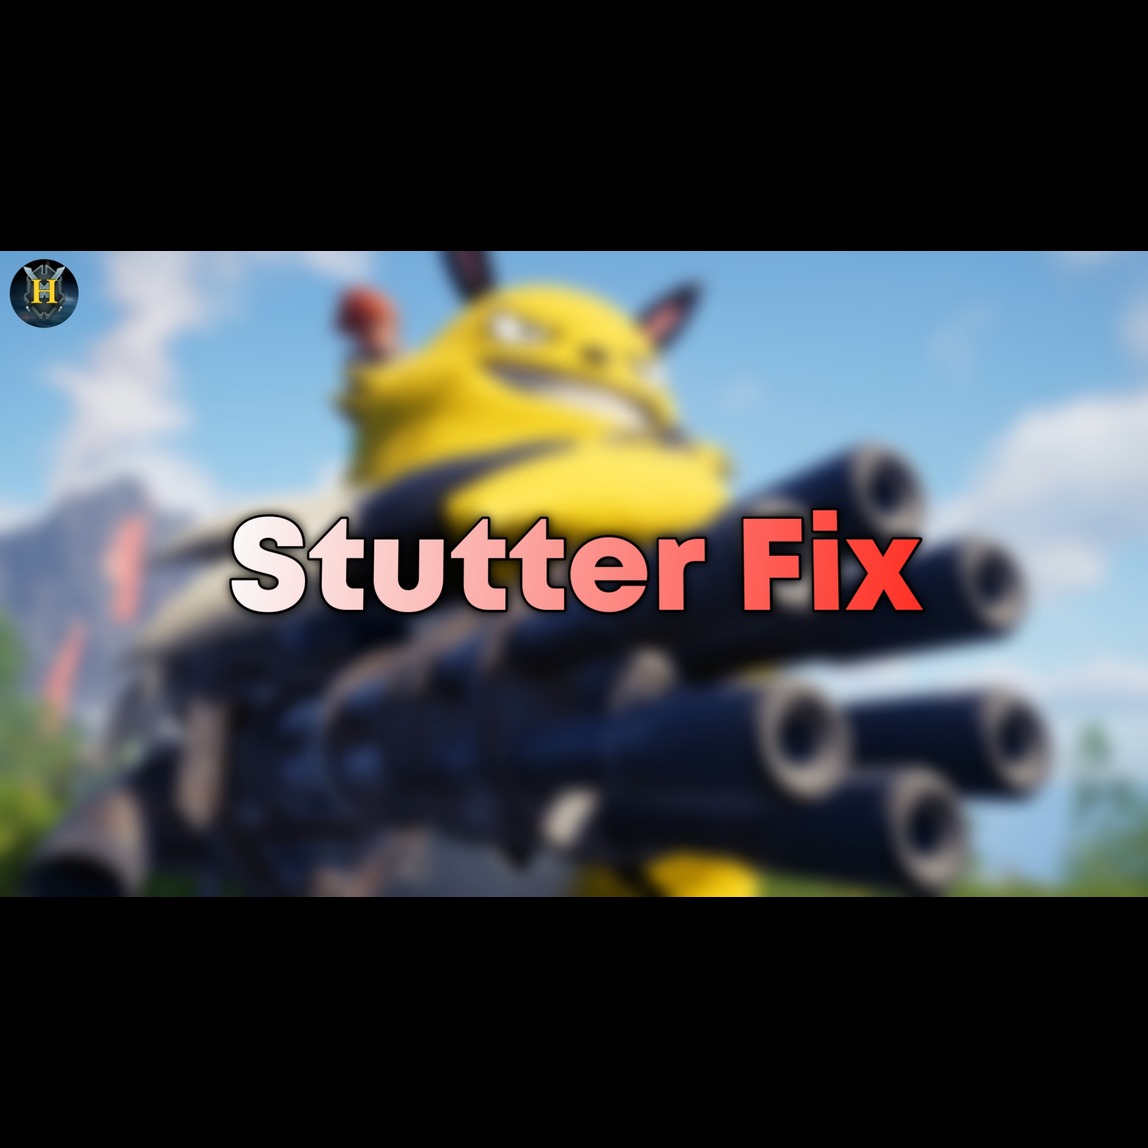 Stutter Fix project avatar